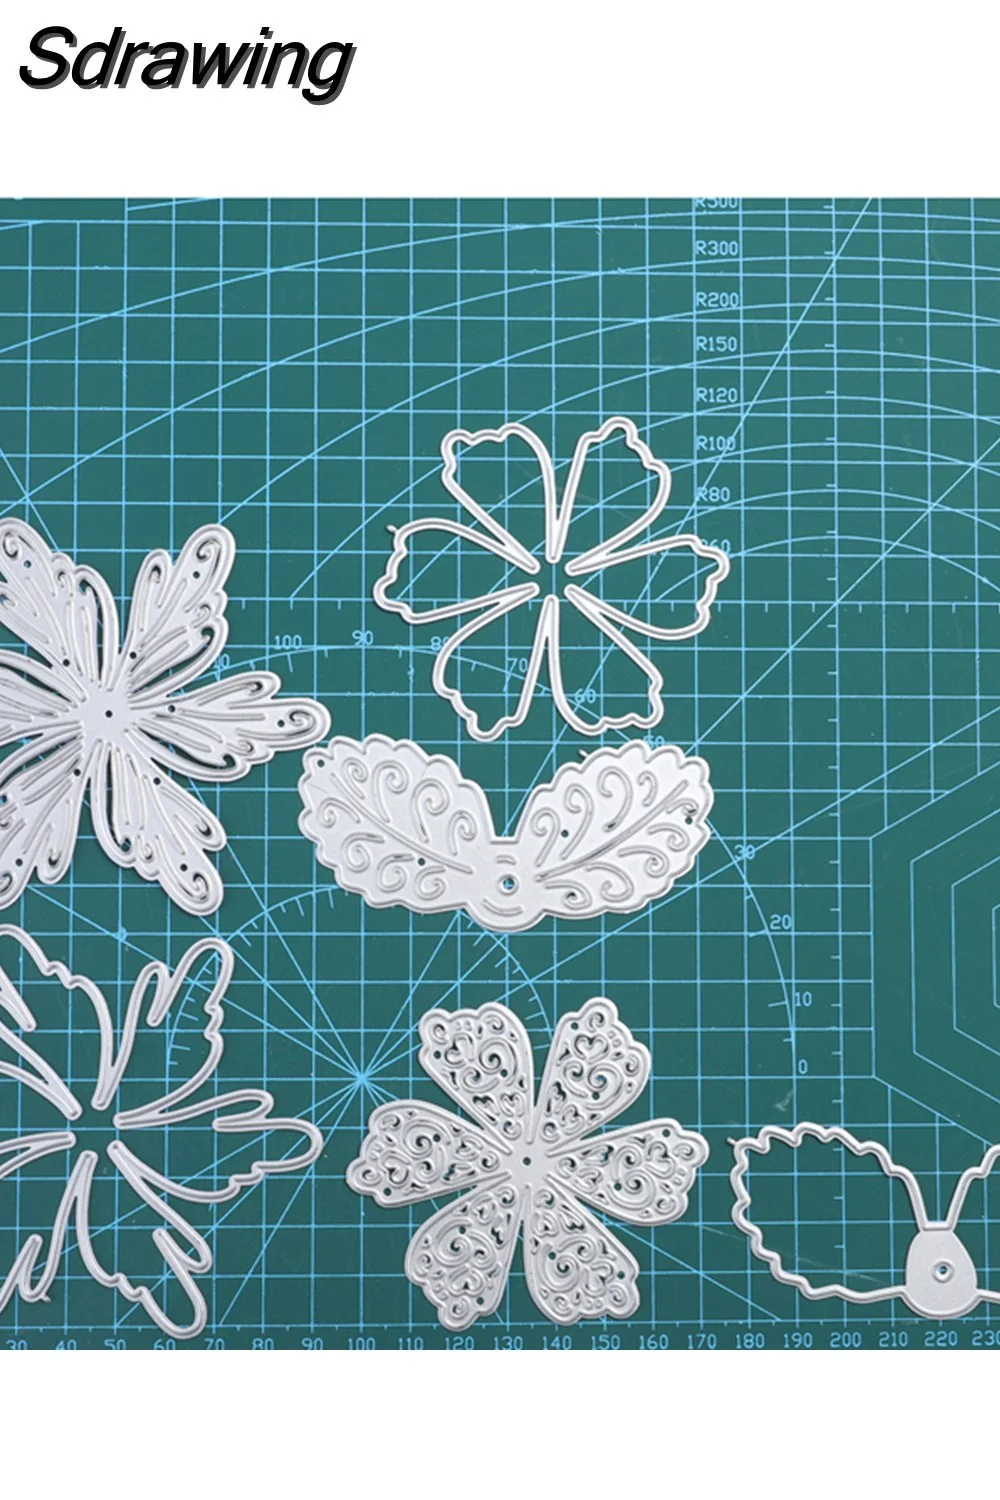 Sdrawing Leaf Series Metal Cutting Dies Flower Scrapbooking for Making Cards Decorative Embossing DIY Crafts Stencils Die Cuts